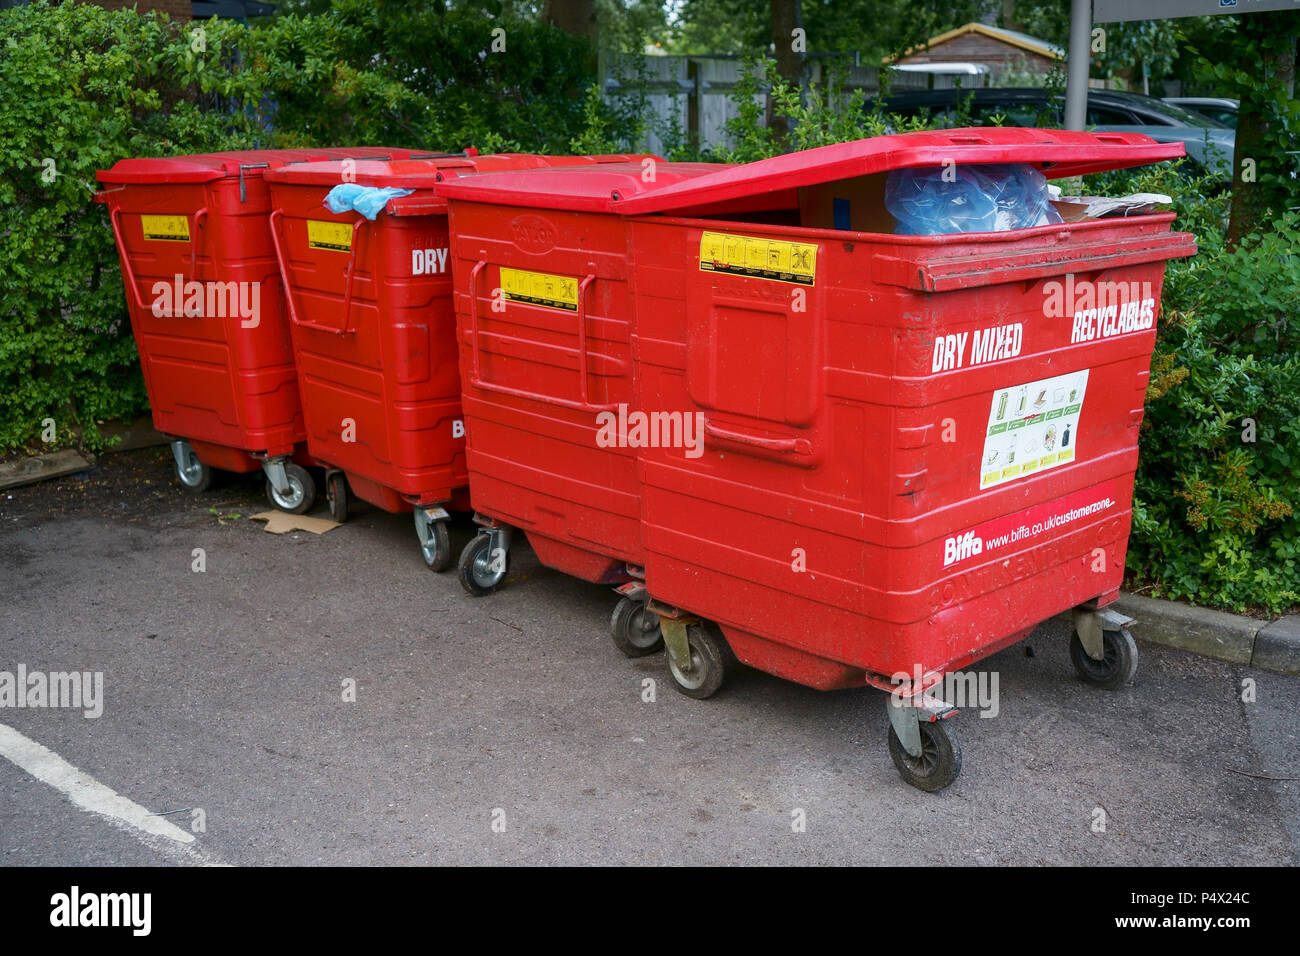 Four red trade waste Biffa bins Stock Photo